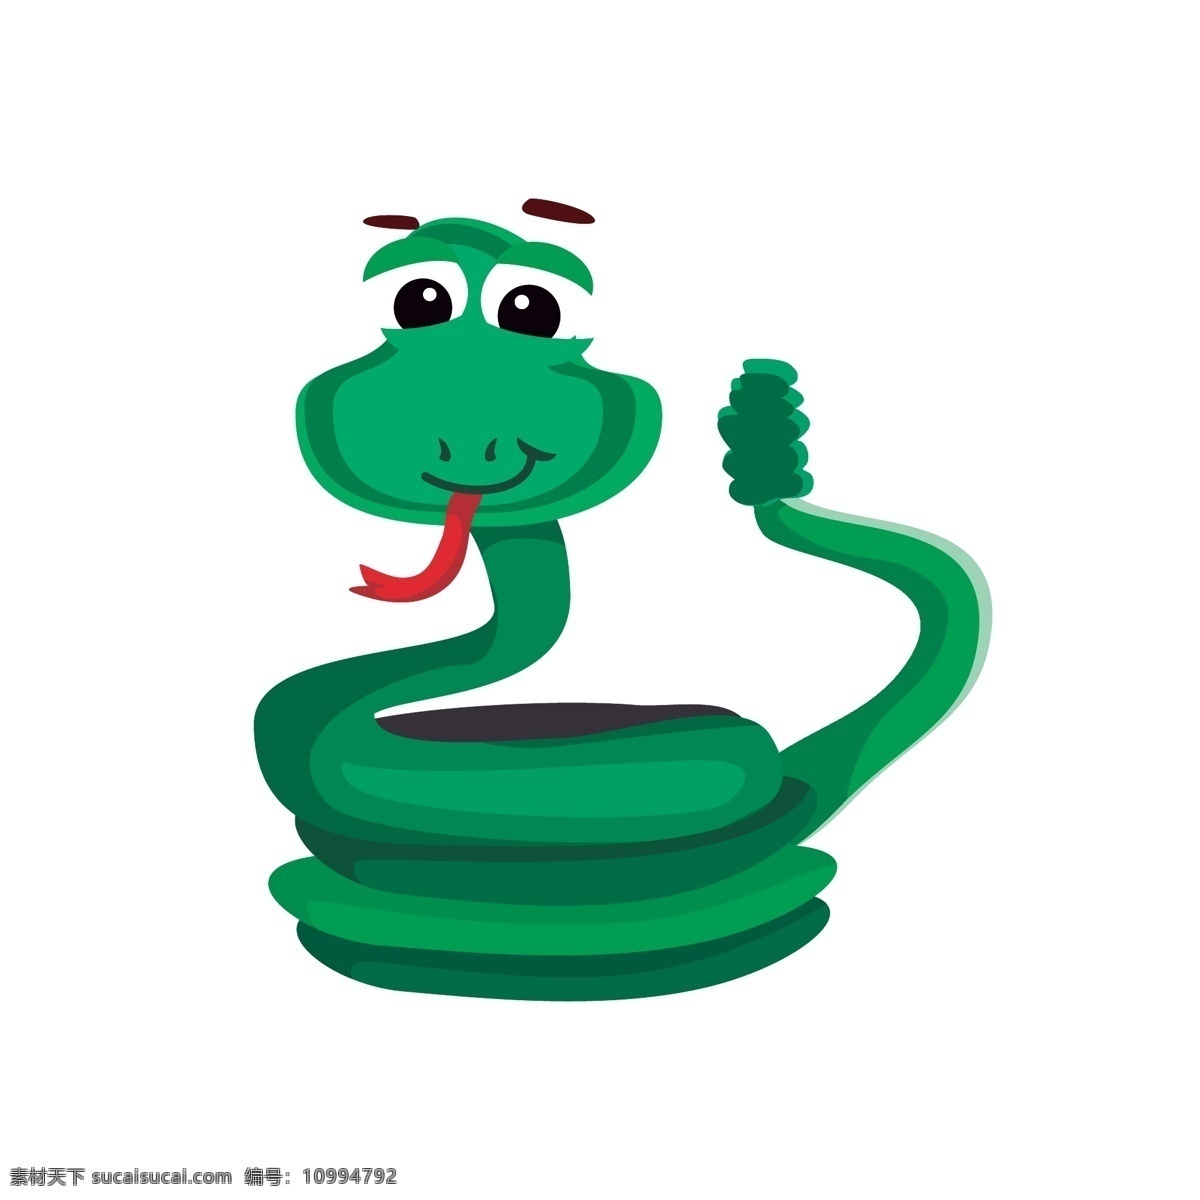 蛇 卡通动物 手绘 卡通 可爱 动物 插画 背景 矢量素材 矢量 卡通可爱动物